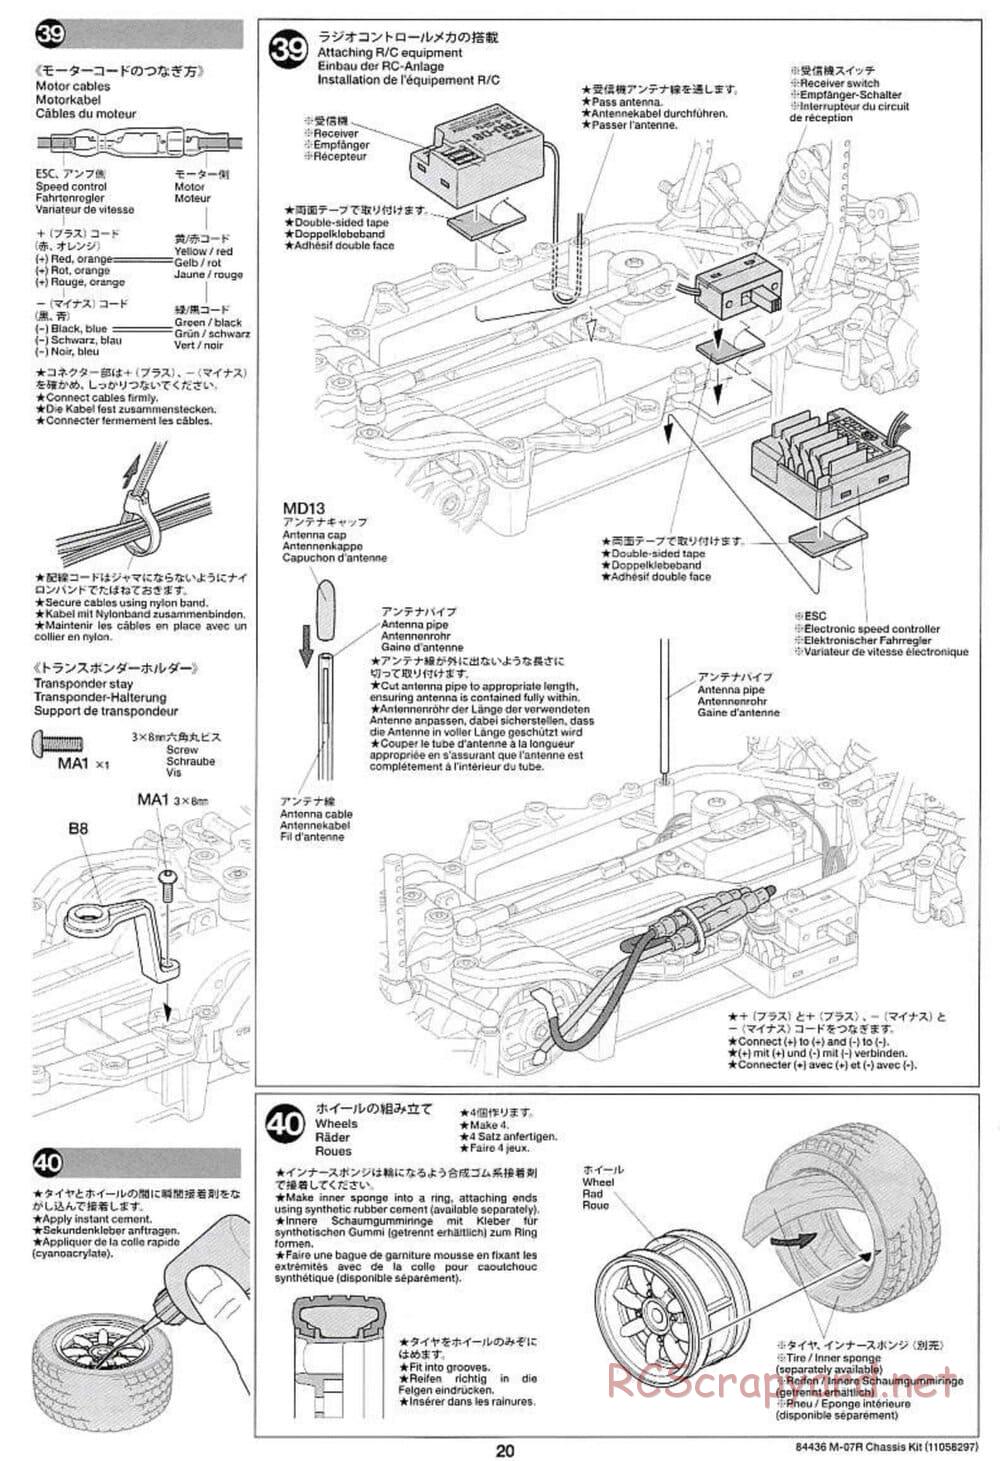 Tamiya - M-07R Chassis - Manual - Page 20